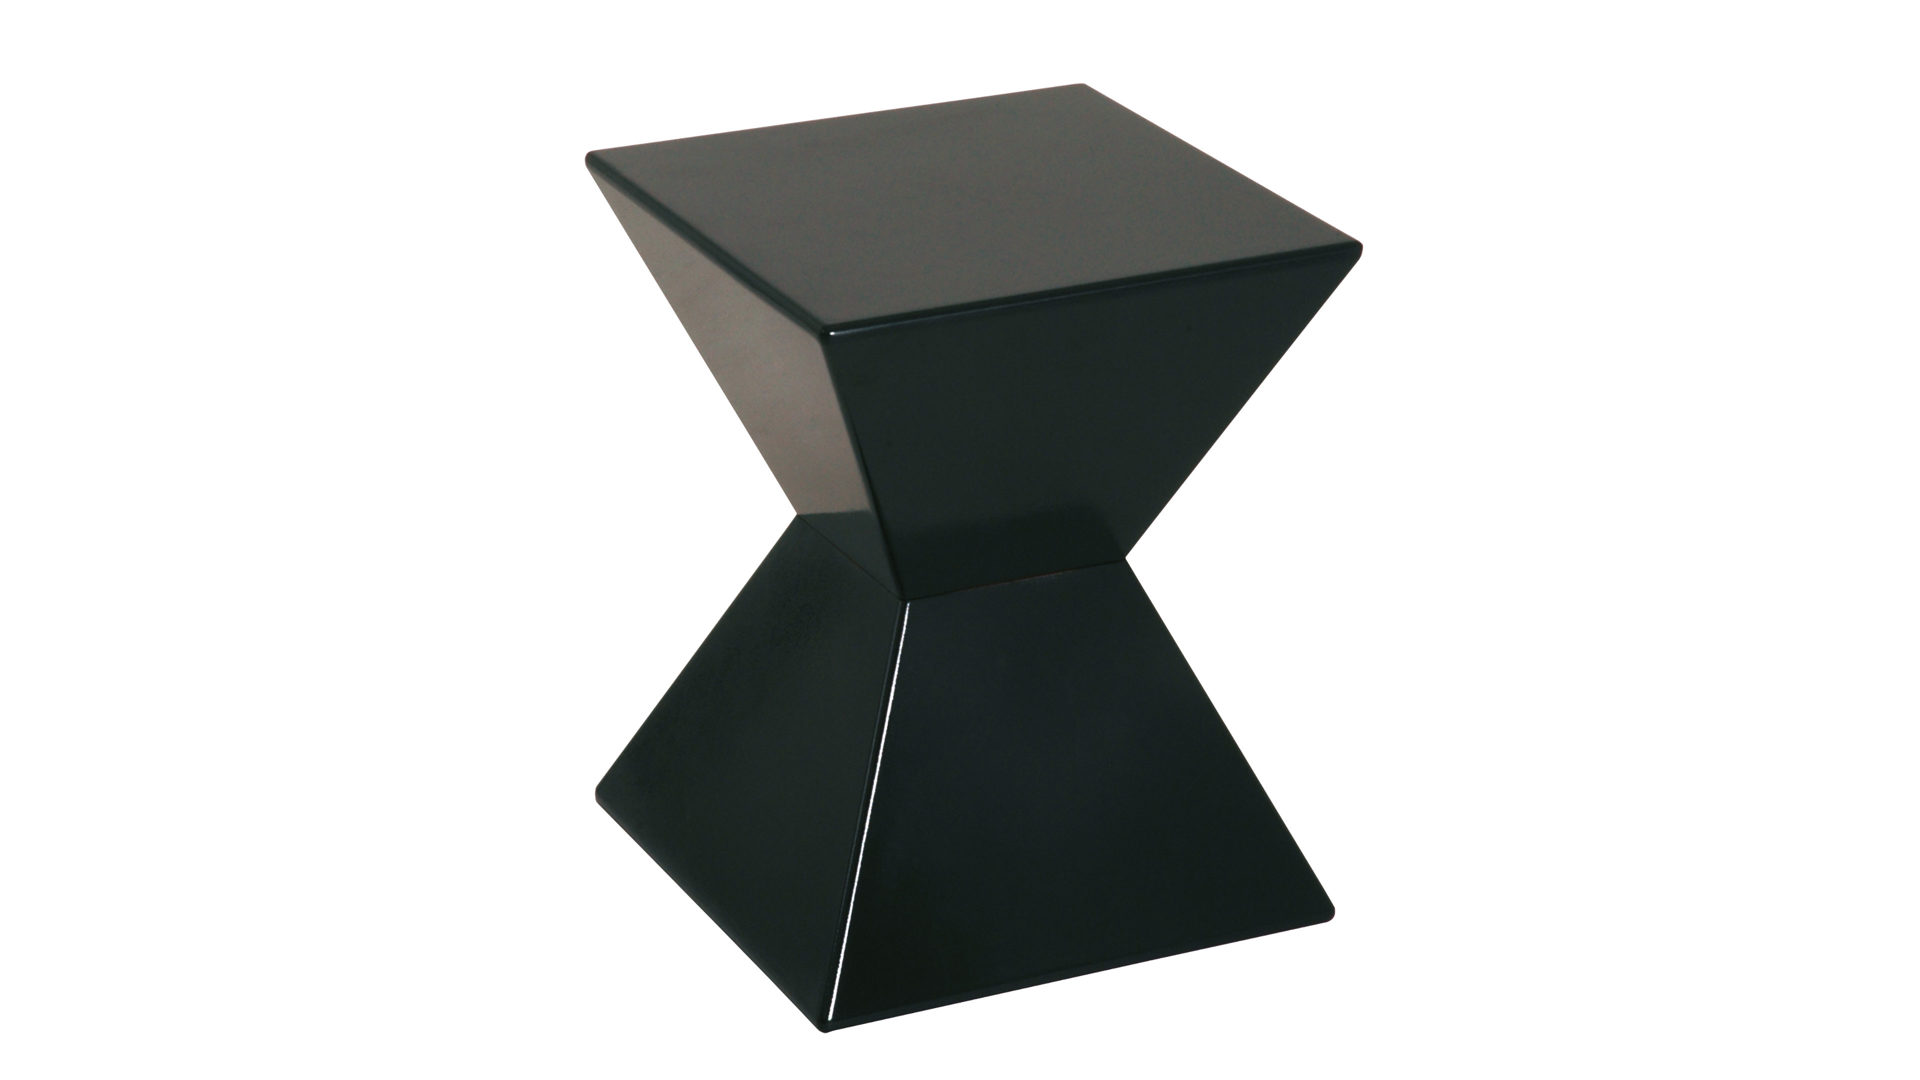 Beistelltisch Haku aus Kunststoff in Schwarz Beistelltisch & Hocker für nahezu jede Wohnlandschaft schwarzer Kunststoffguß - ca. 35 x 43 x 35 cm